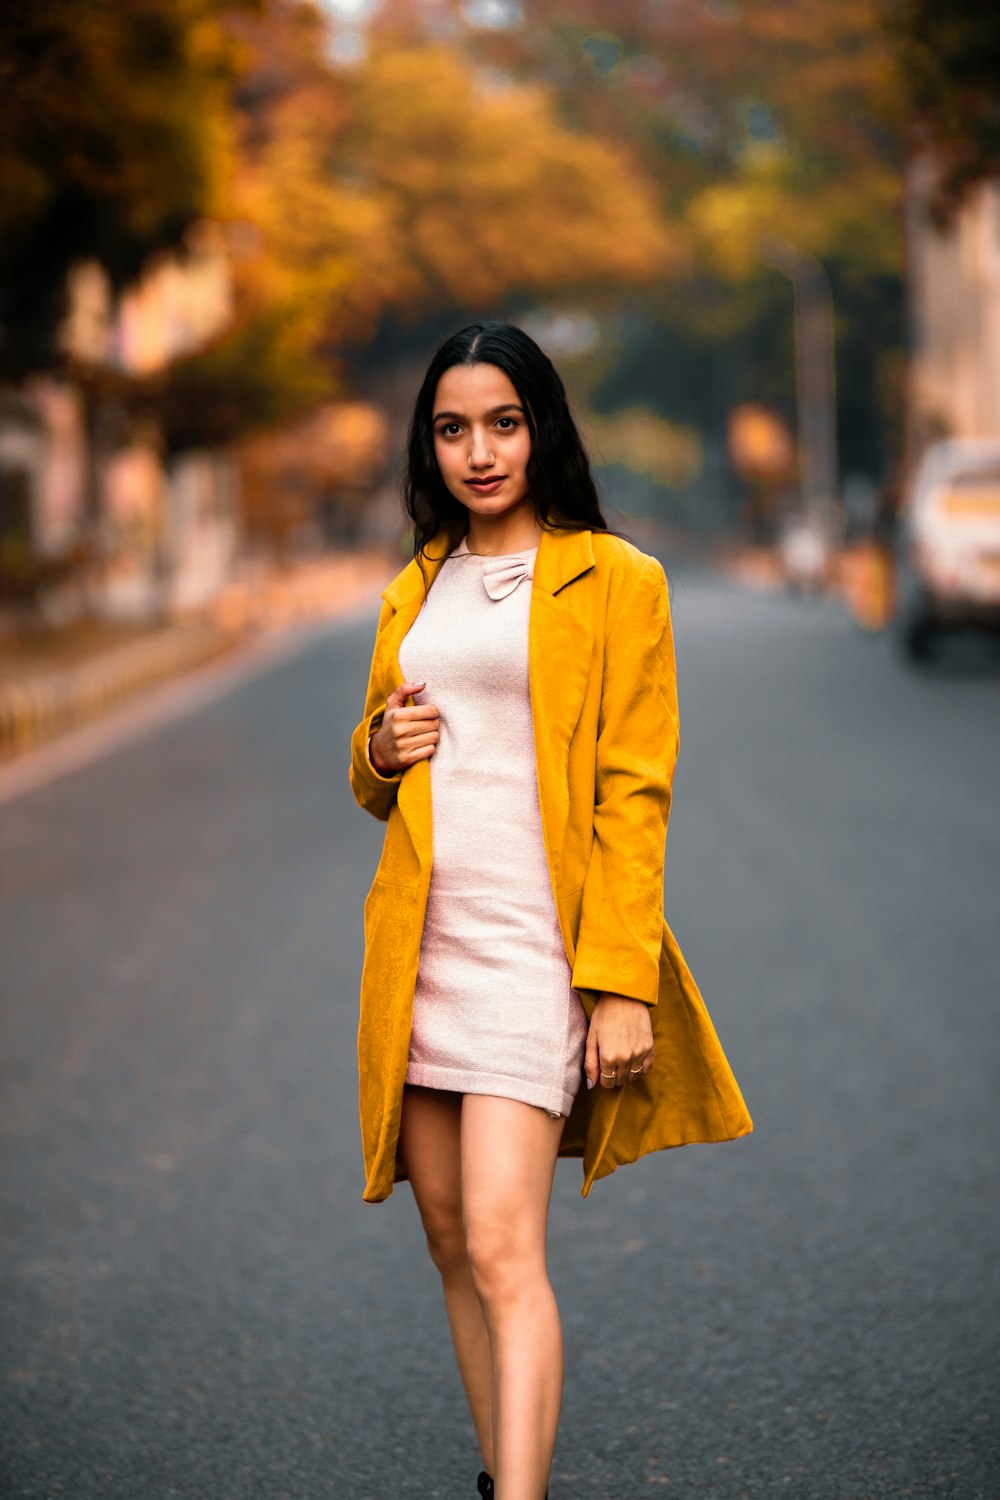 Frau im gelben Blazer tagsüber auf der Straße